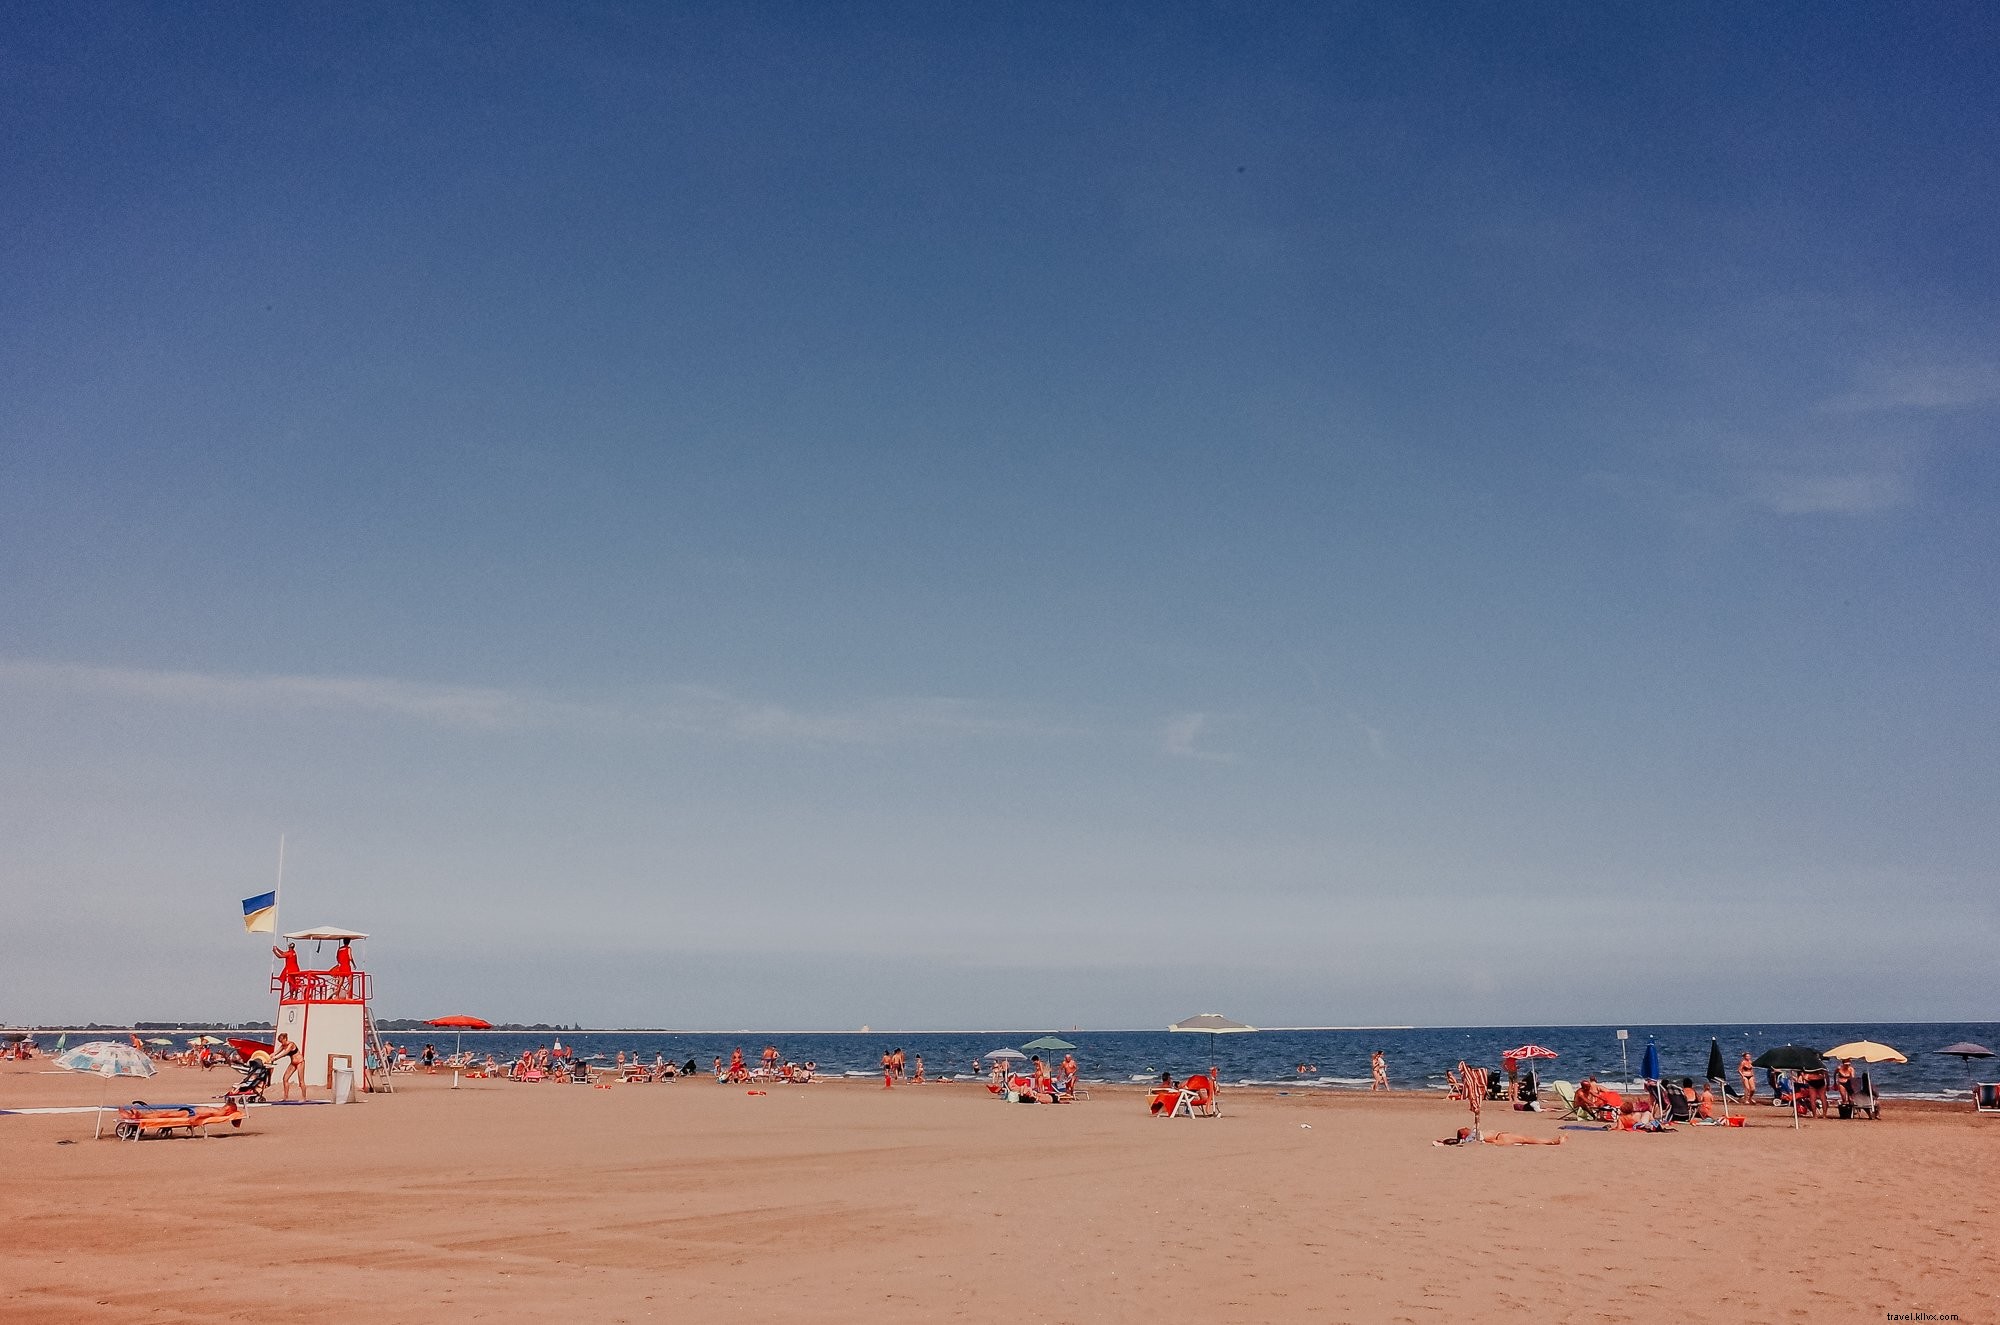 Le persone si godono una giornata limpida in spiaggia Foto 